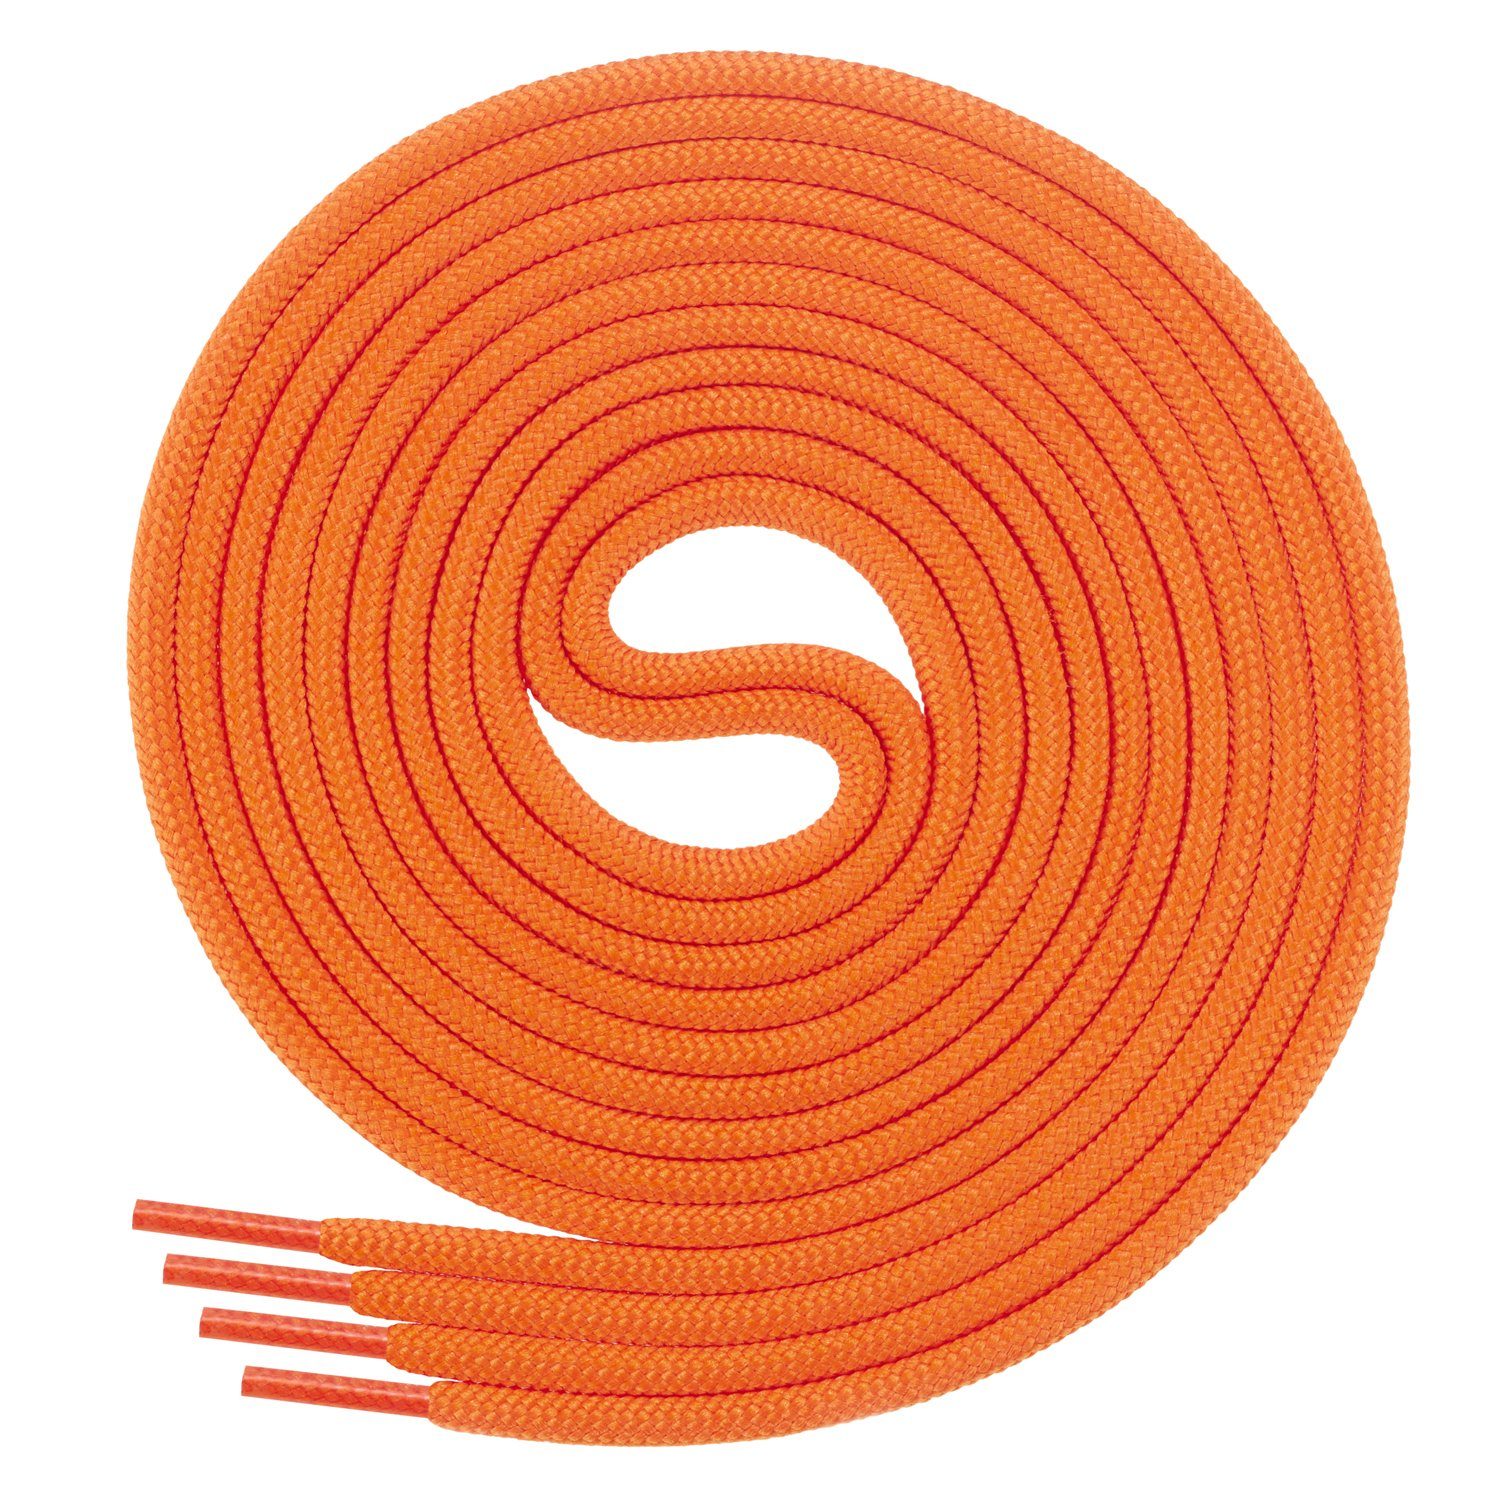 Di Ficchiano Schnürsenkel 1Paar runde Schnürsenkel ø 3mm für Business- und Lederschuhe, reißfest Orange